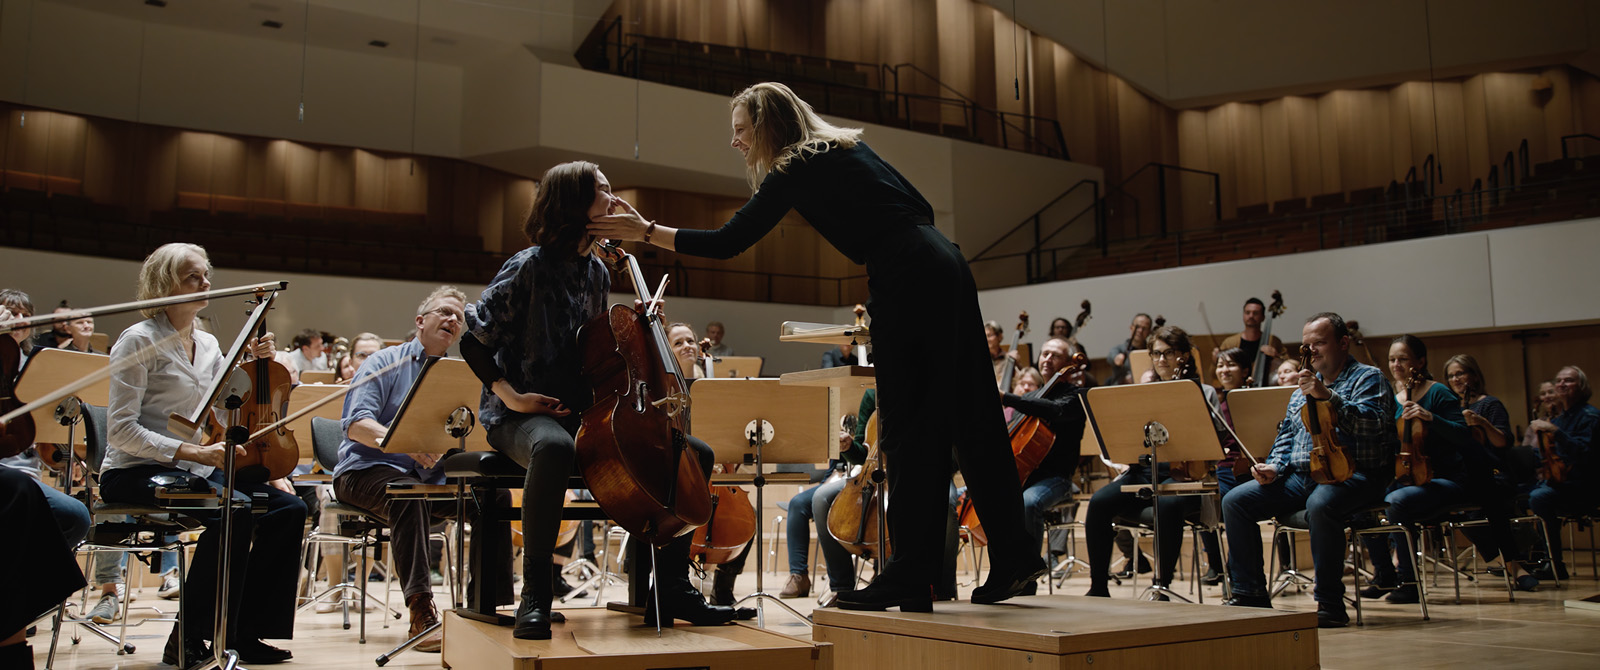 cheffe d'orchestre (Lydia) caressant la joue d'une violoncelliste de l'orchestre symphonique de Berlin